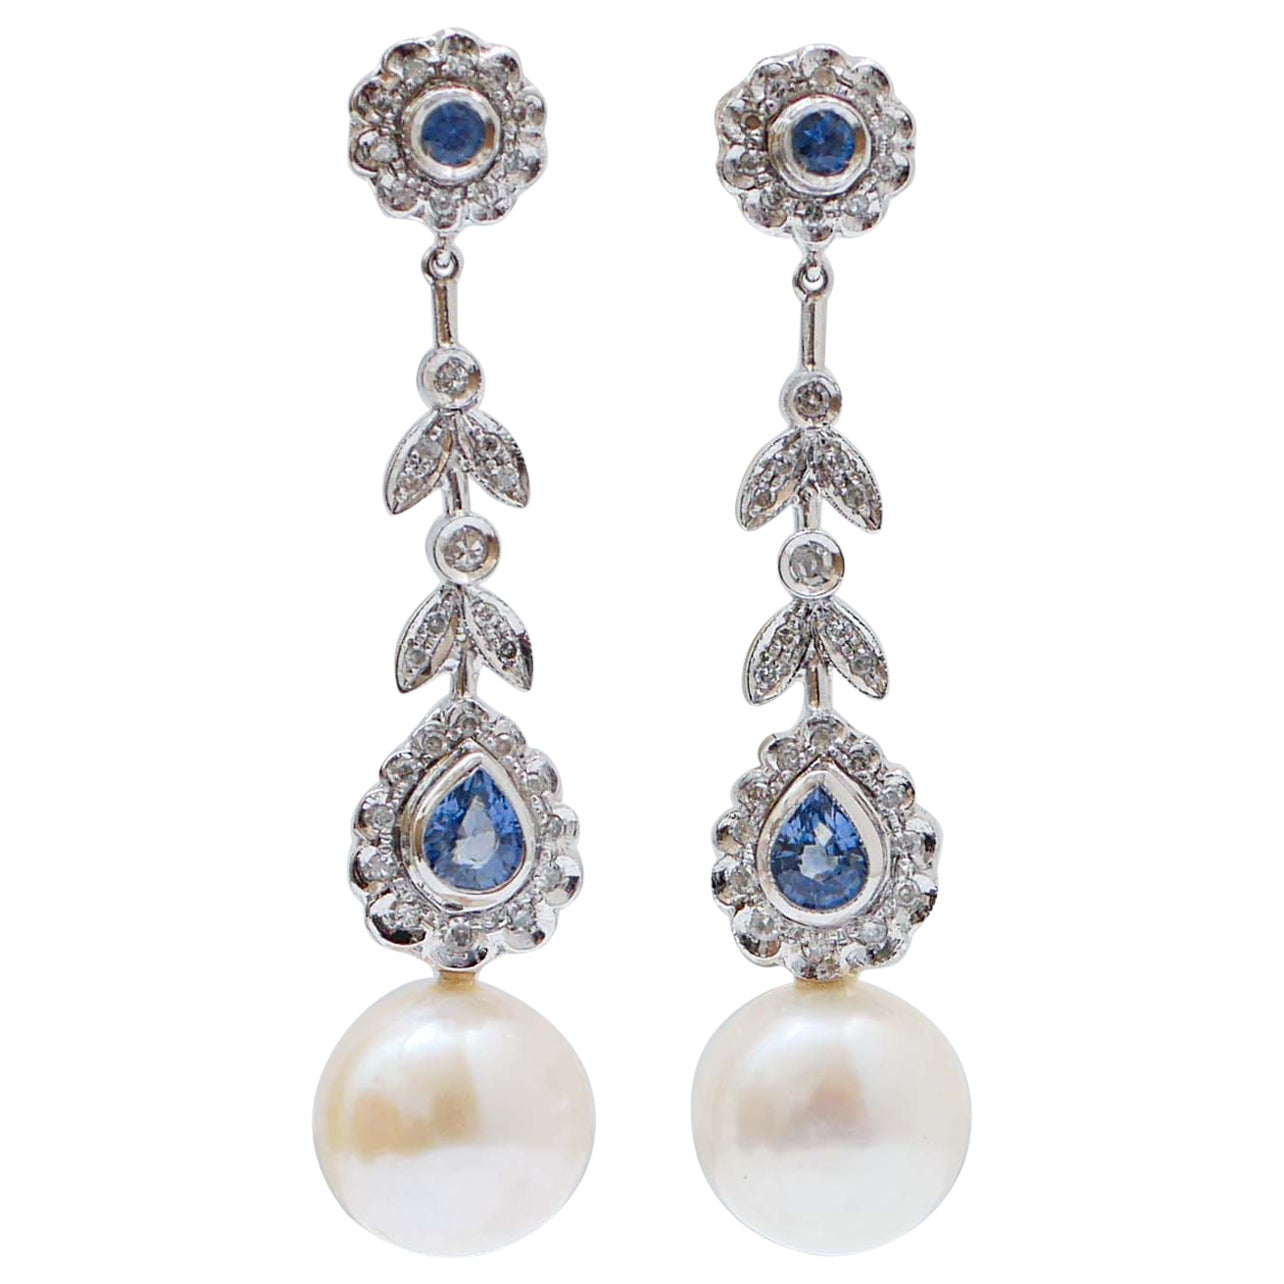 Ohrringe aus Platin mit weißen Perlen, Saphiren, Diamanten und Platin.